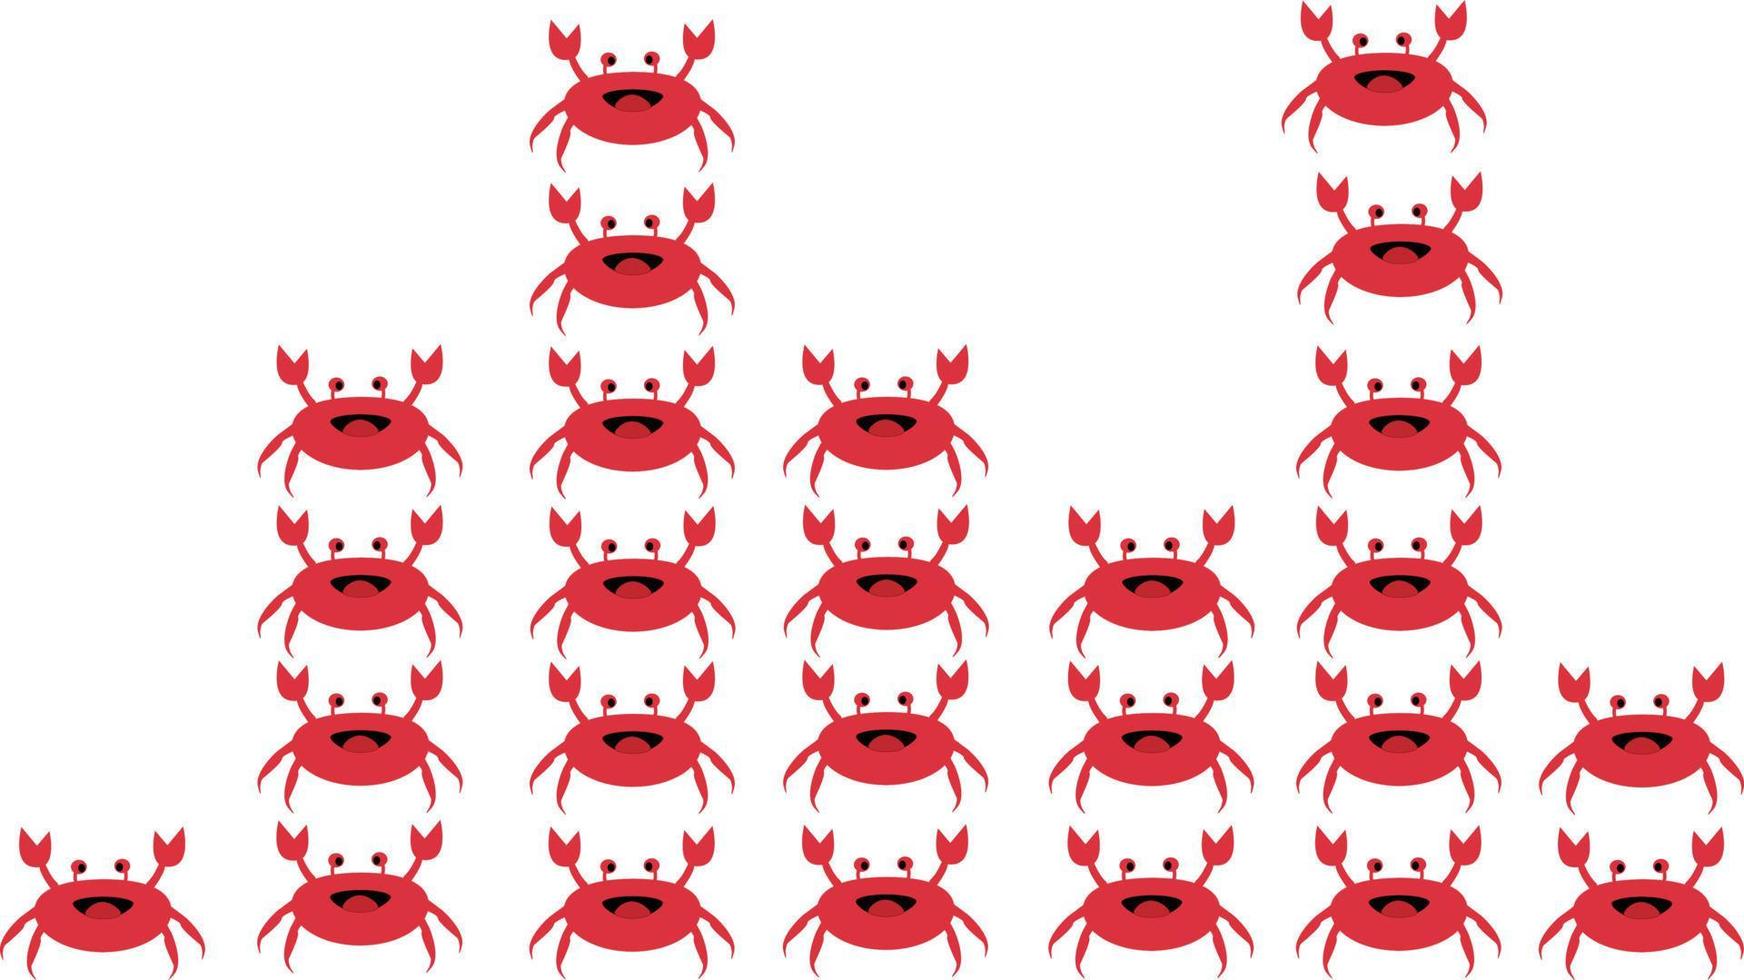 Krabben-Symbol auf weißem Hintergrund. Reihe von Krabben. vektor